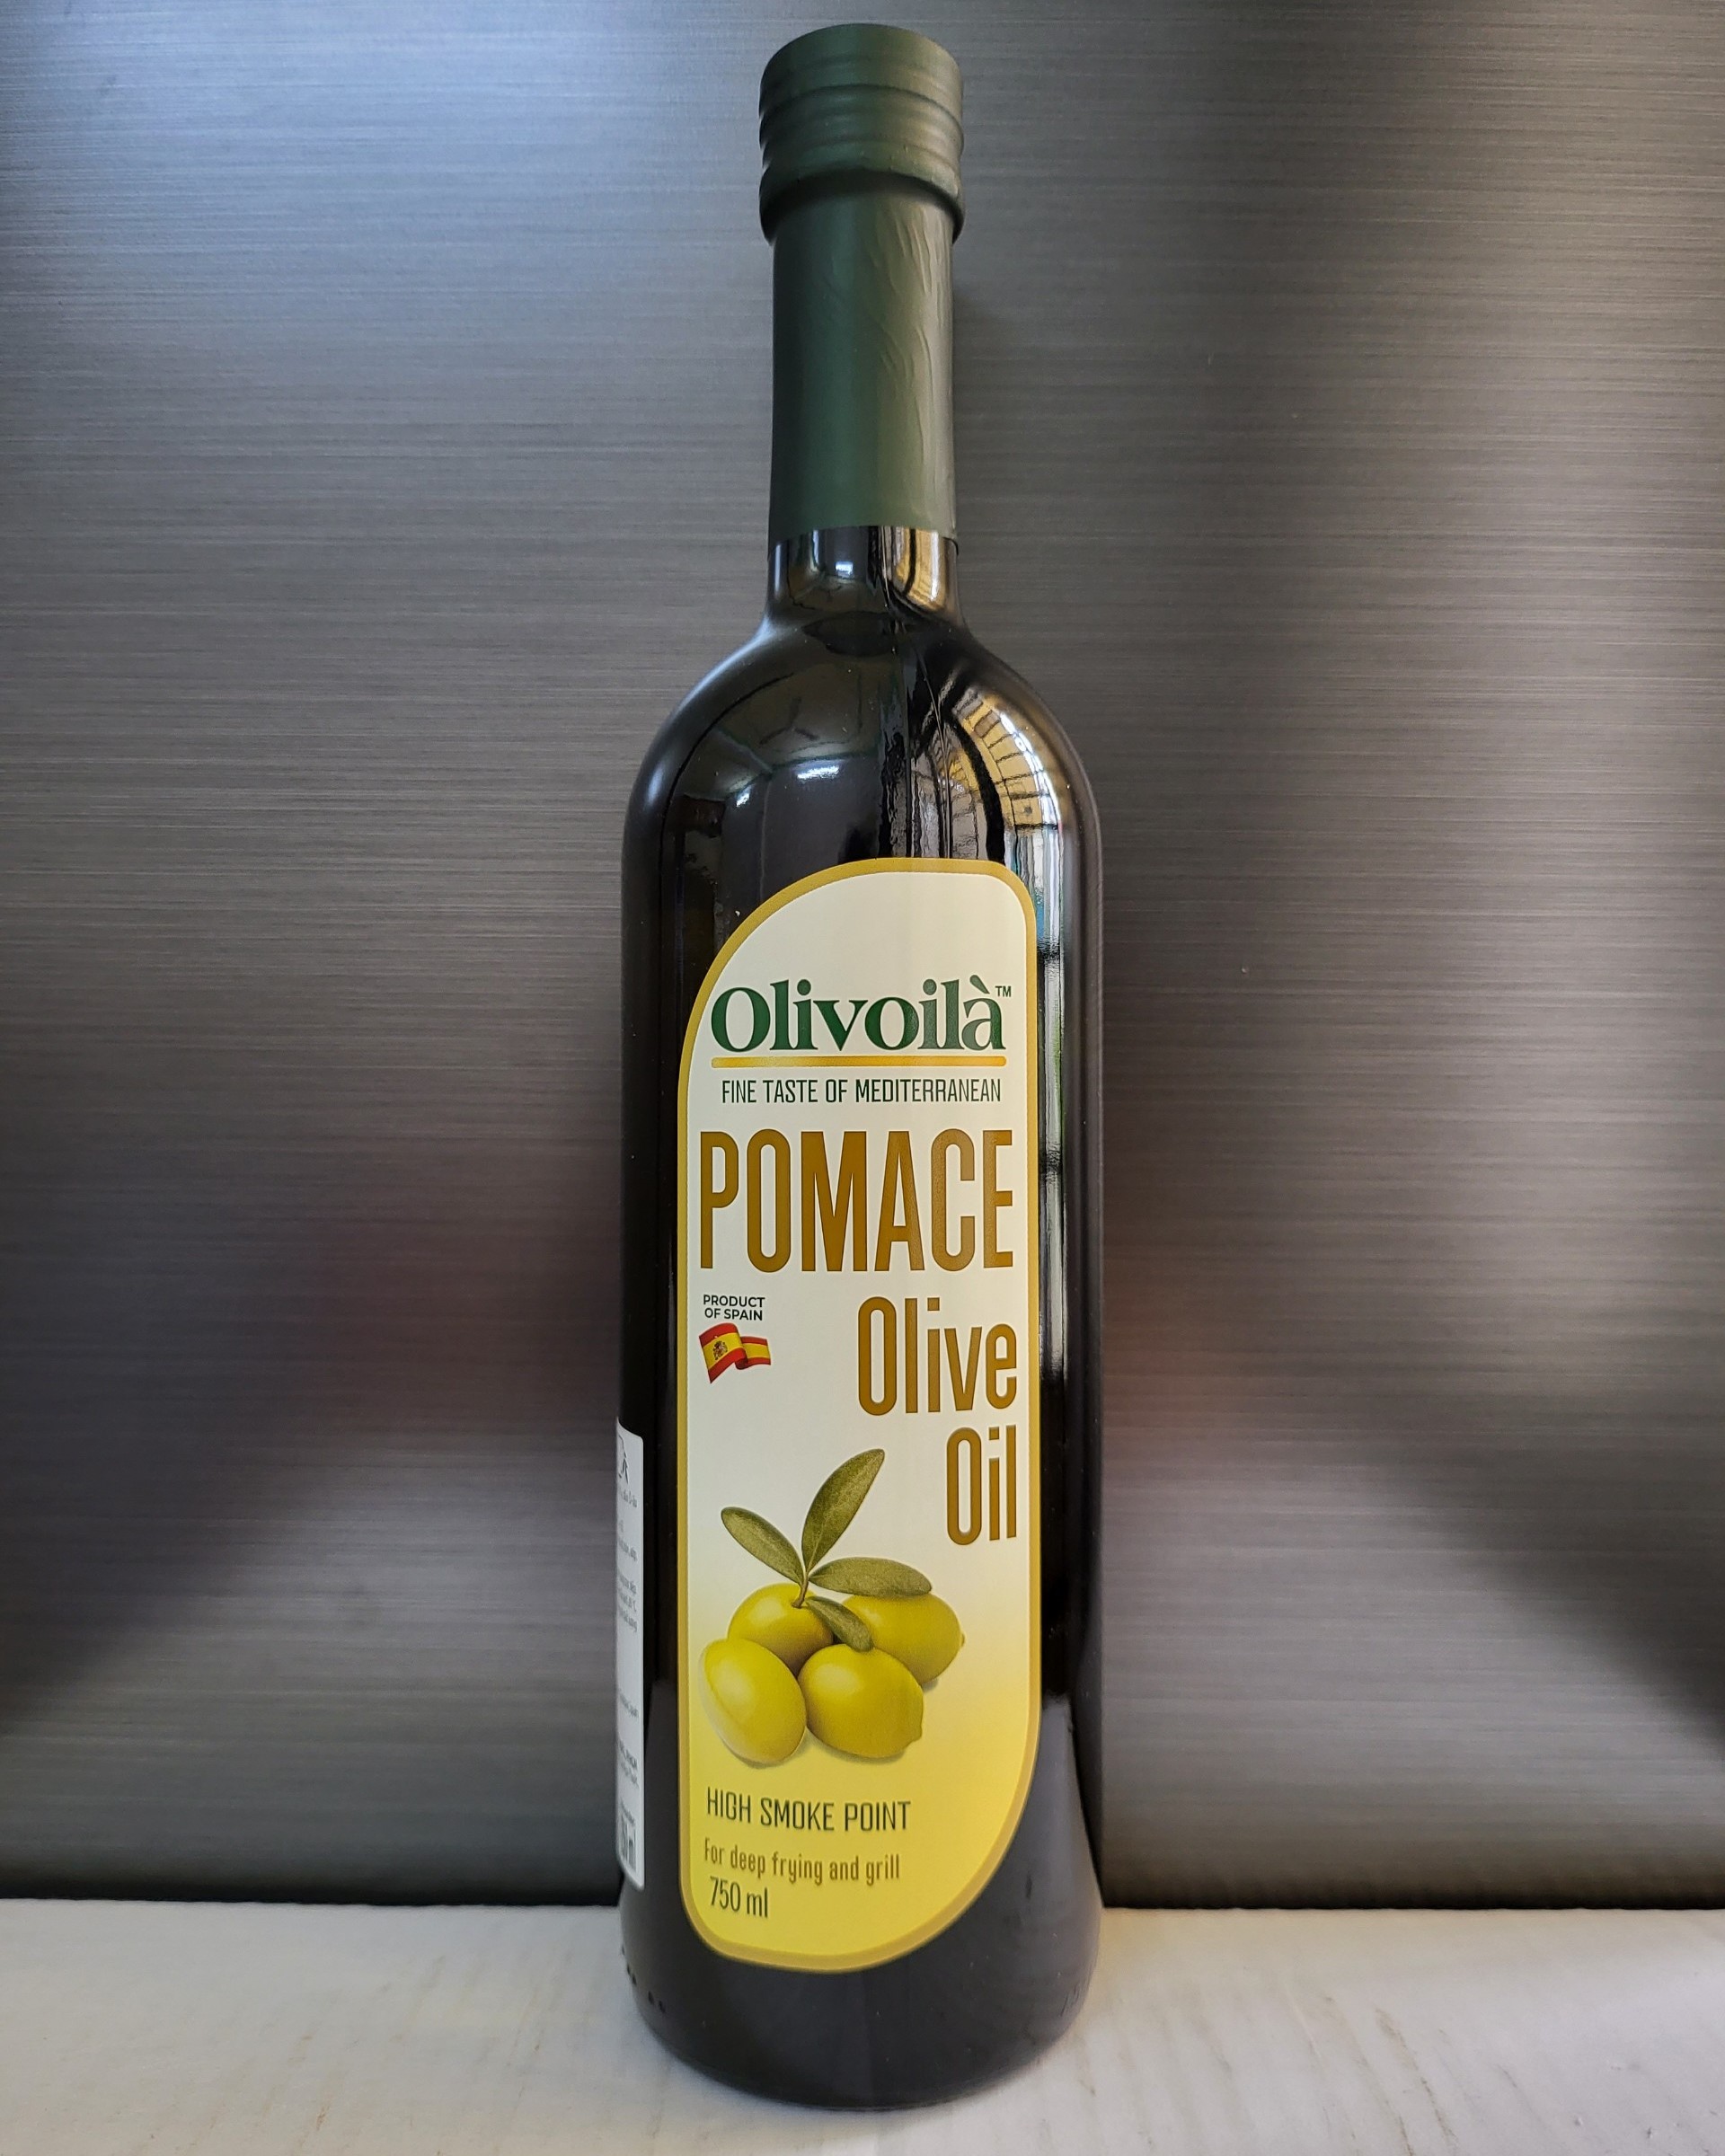 OLIVOILÀ Chai PMC To 750ml - DẦU Ô LIU TINH LUYỆN TBN Pomace Olive Oil